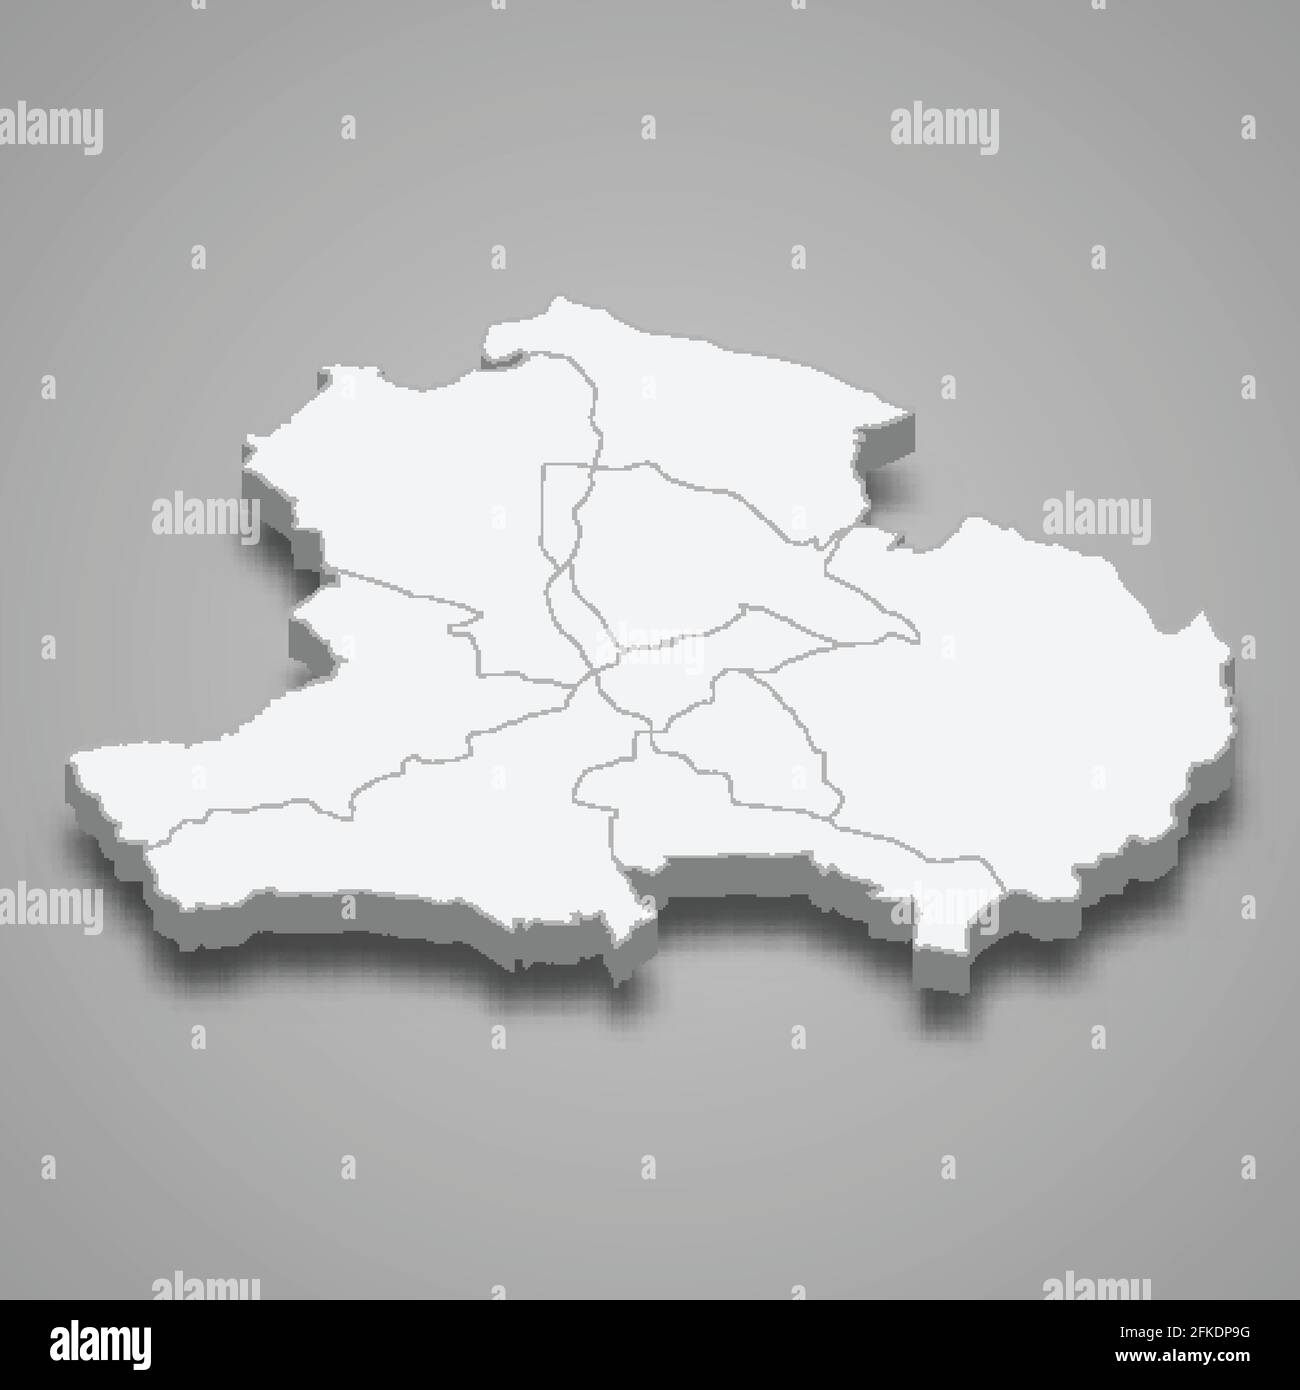 La mappa isometrica 3d di Tbilisi è una regione della Georgia, illustrazione vettoriale Illustrazione Vettoriale